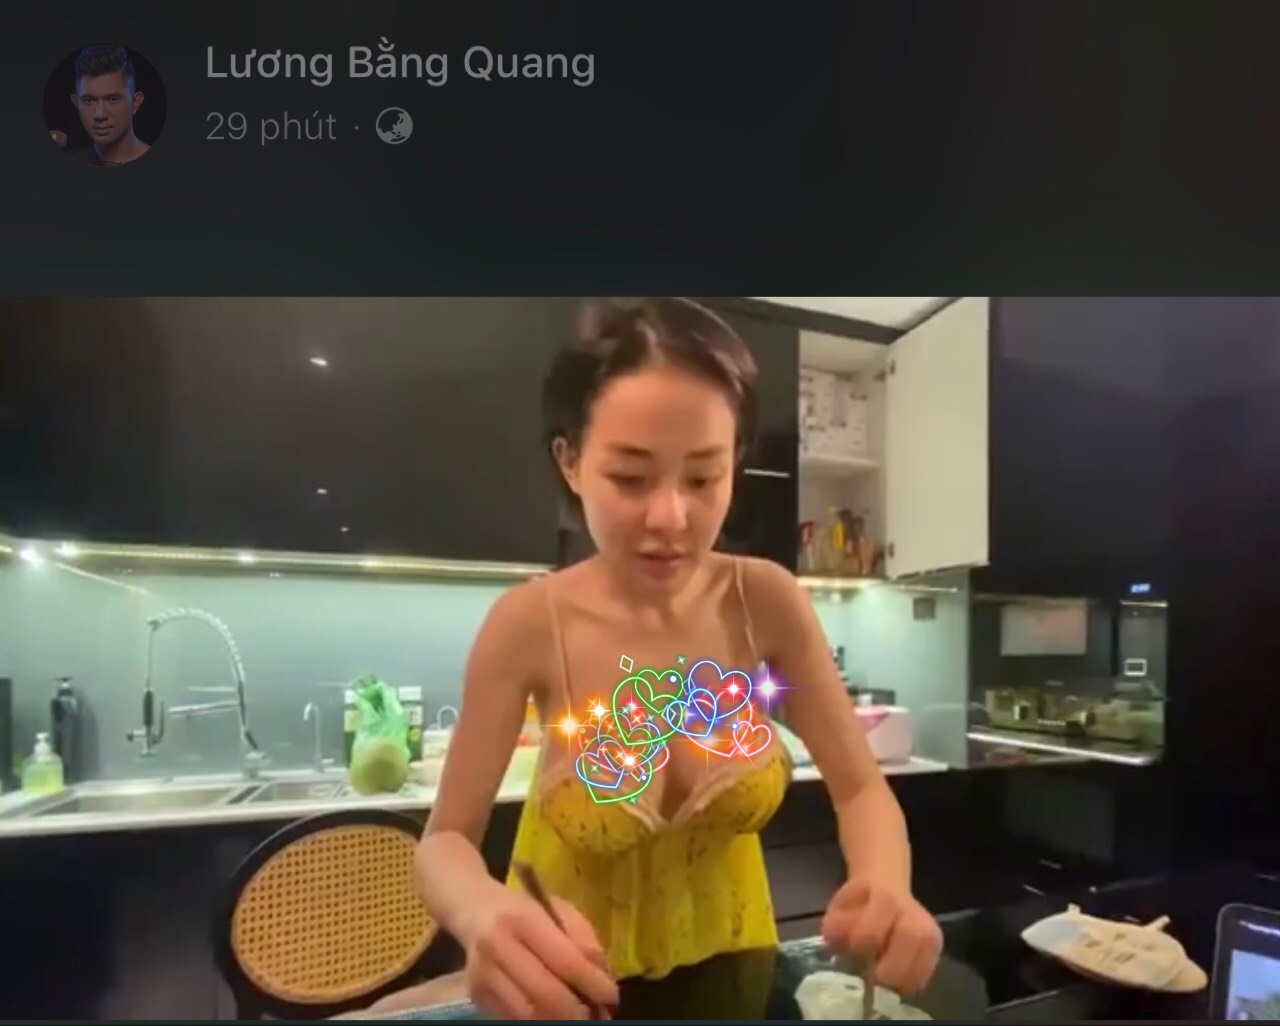 Ngân 98 - bạn gái Lương Bằng Quang lên tiếng về 'cảnh nóng' trong phim  'Live'